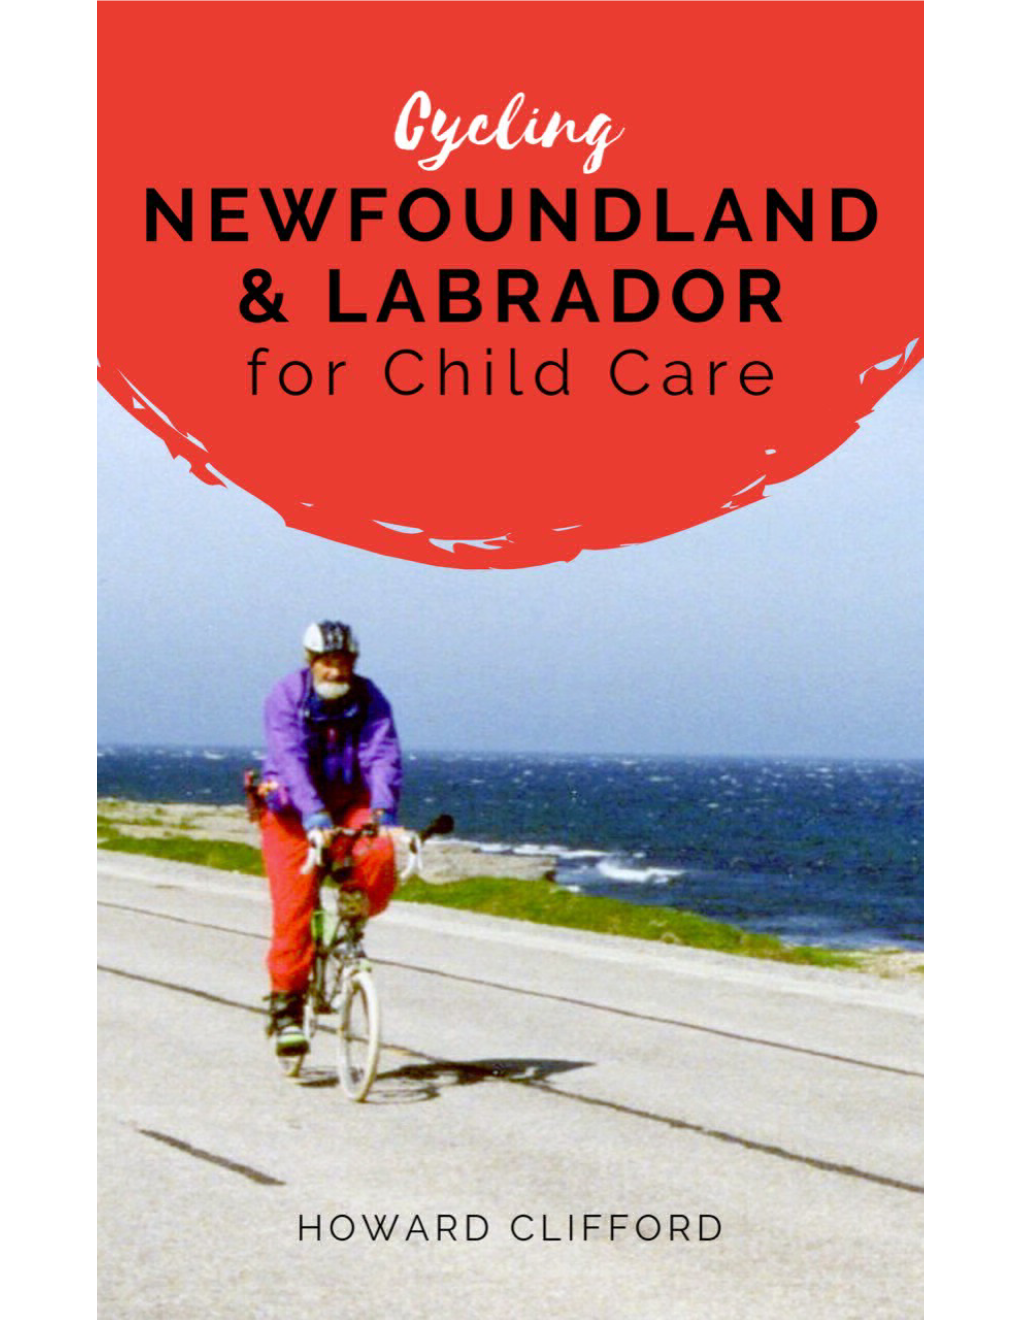 Cycling Newfoundland and Labrador for Child Care